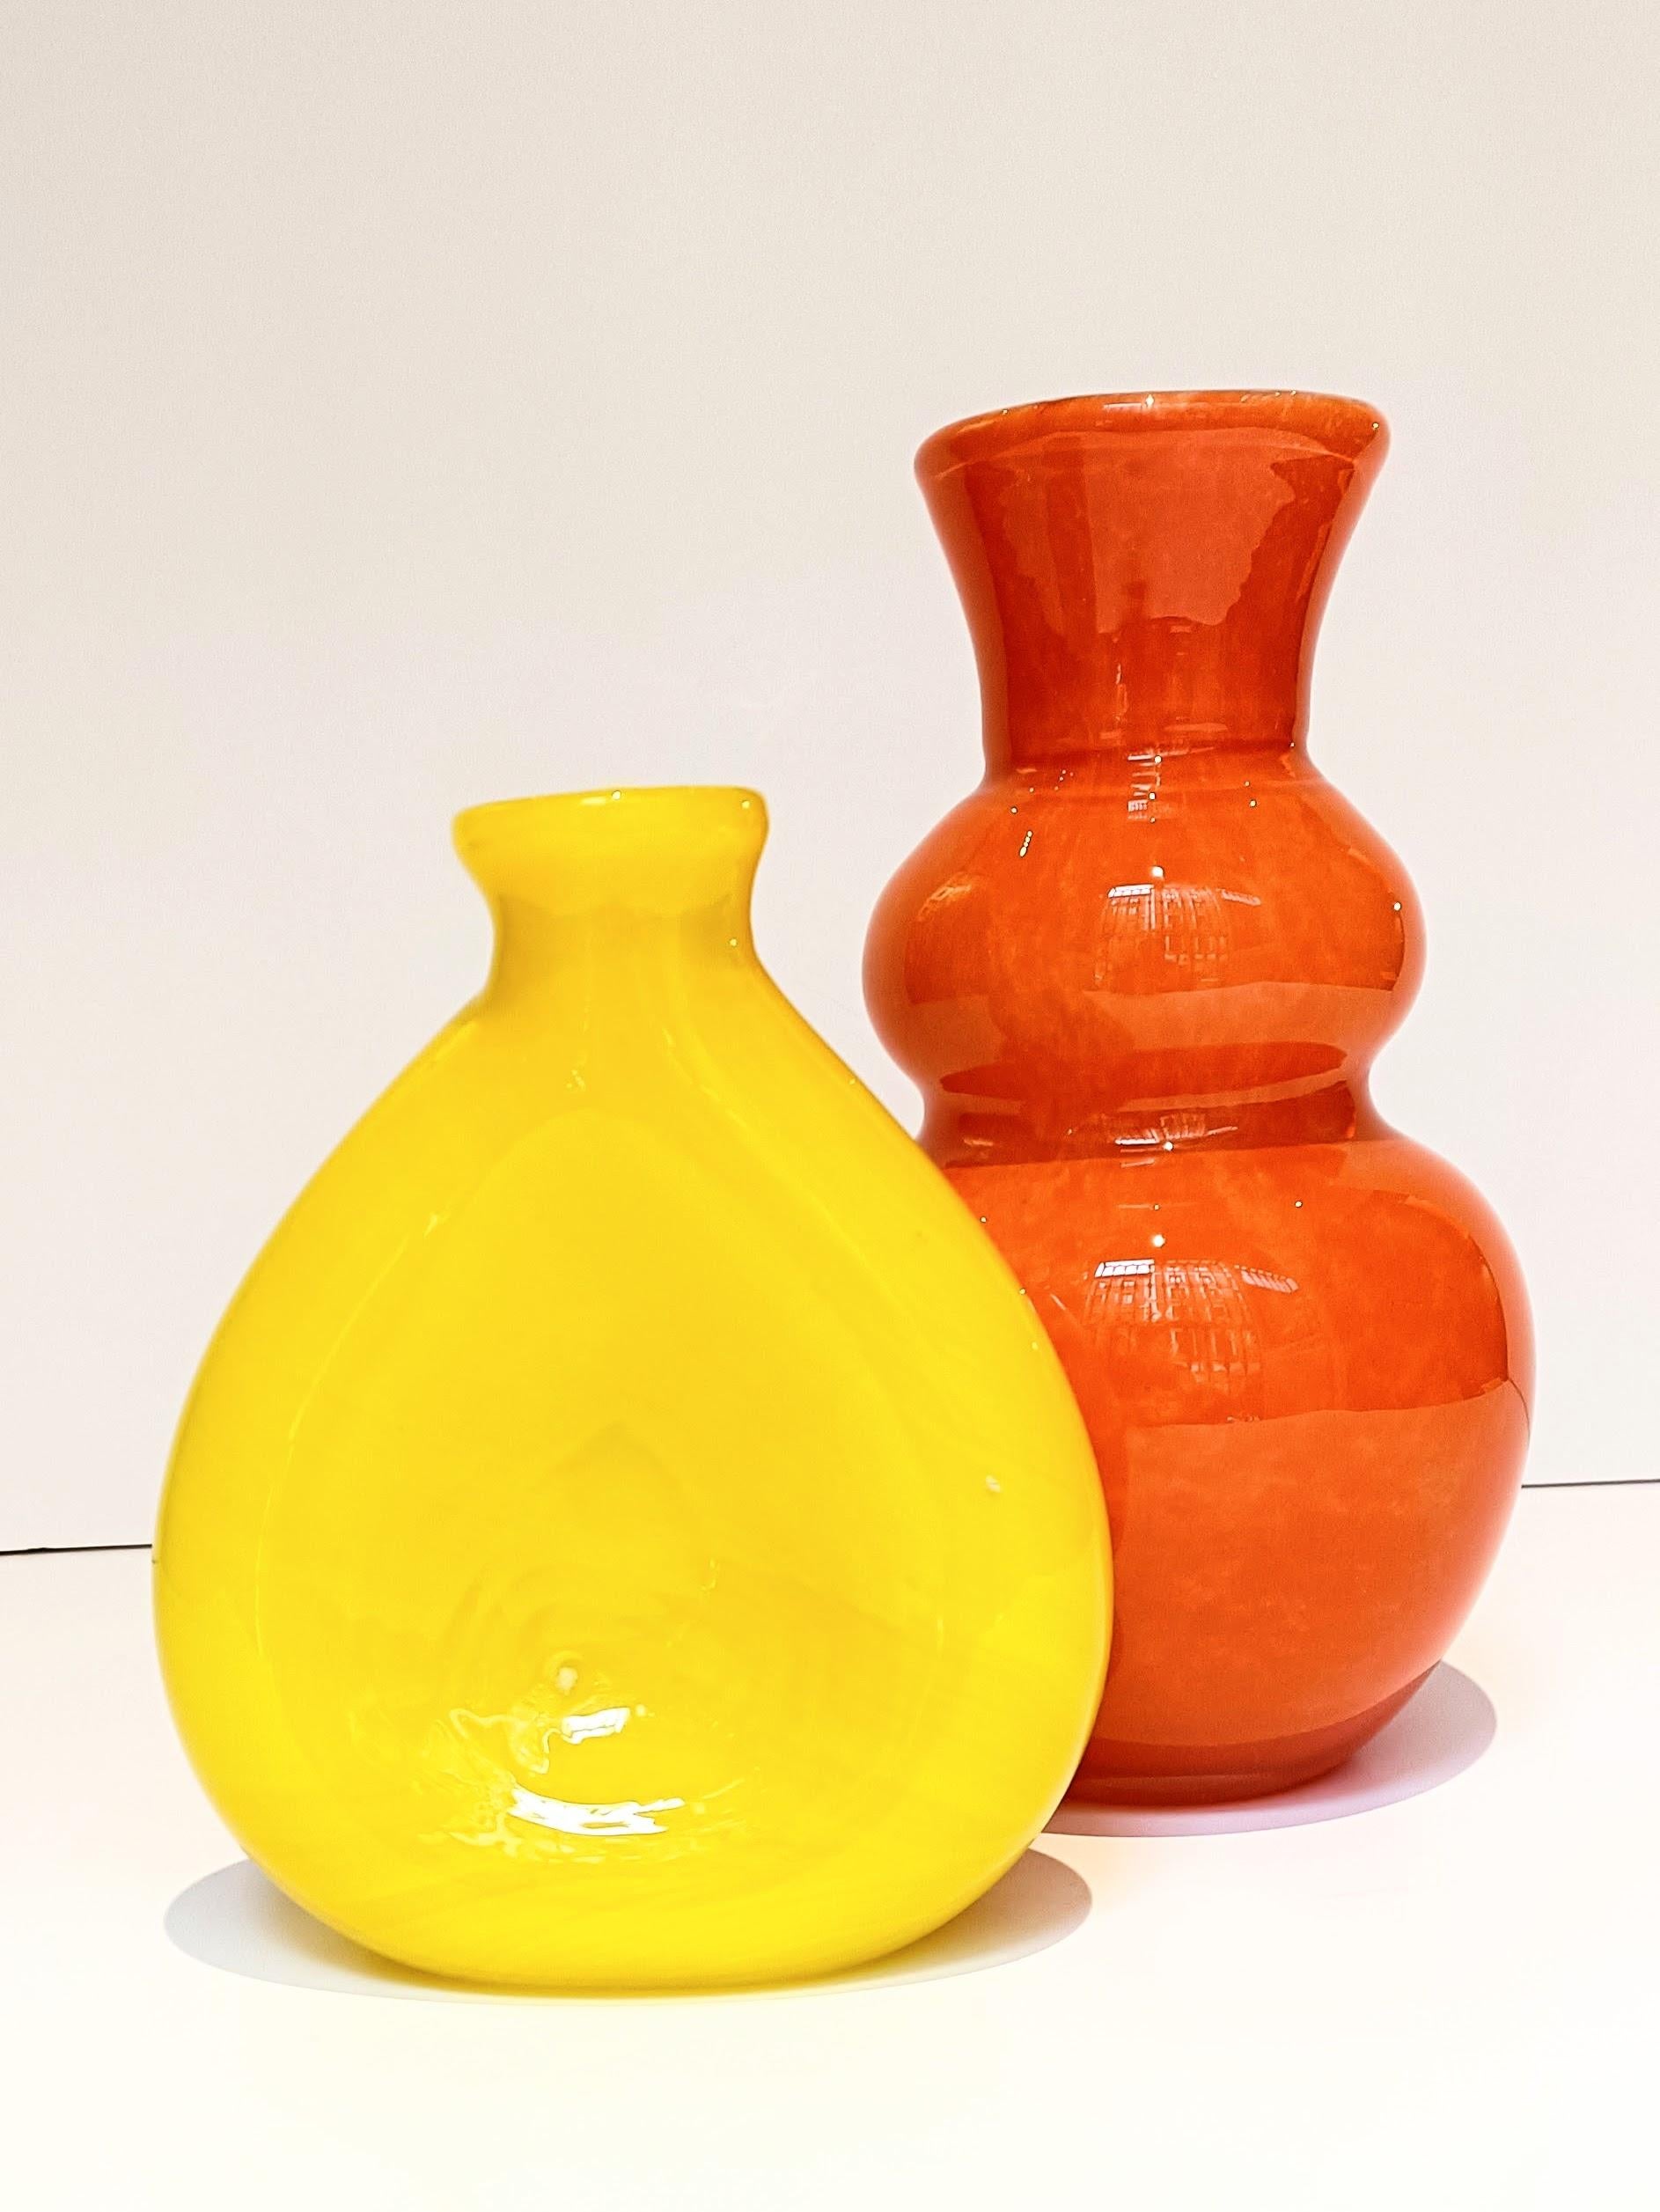 Ein Paar Vasen aus Murano-Glas im Stil der Pop-Art der Jahrhundertmitte. Ihre dicken Außenschichten in leuchtenden Orange- und Gelbtönen sowie die markante weiße Ummantelung der orangefarbenen Vase sorgen für einen auffälligen optischen Reiz. Sie